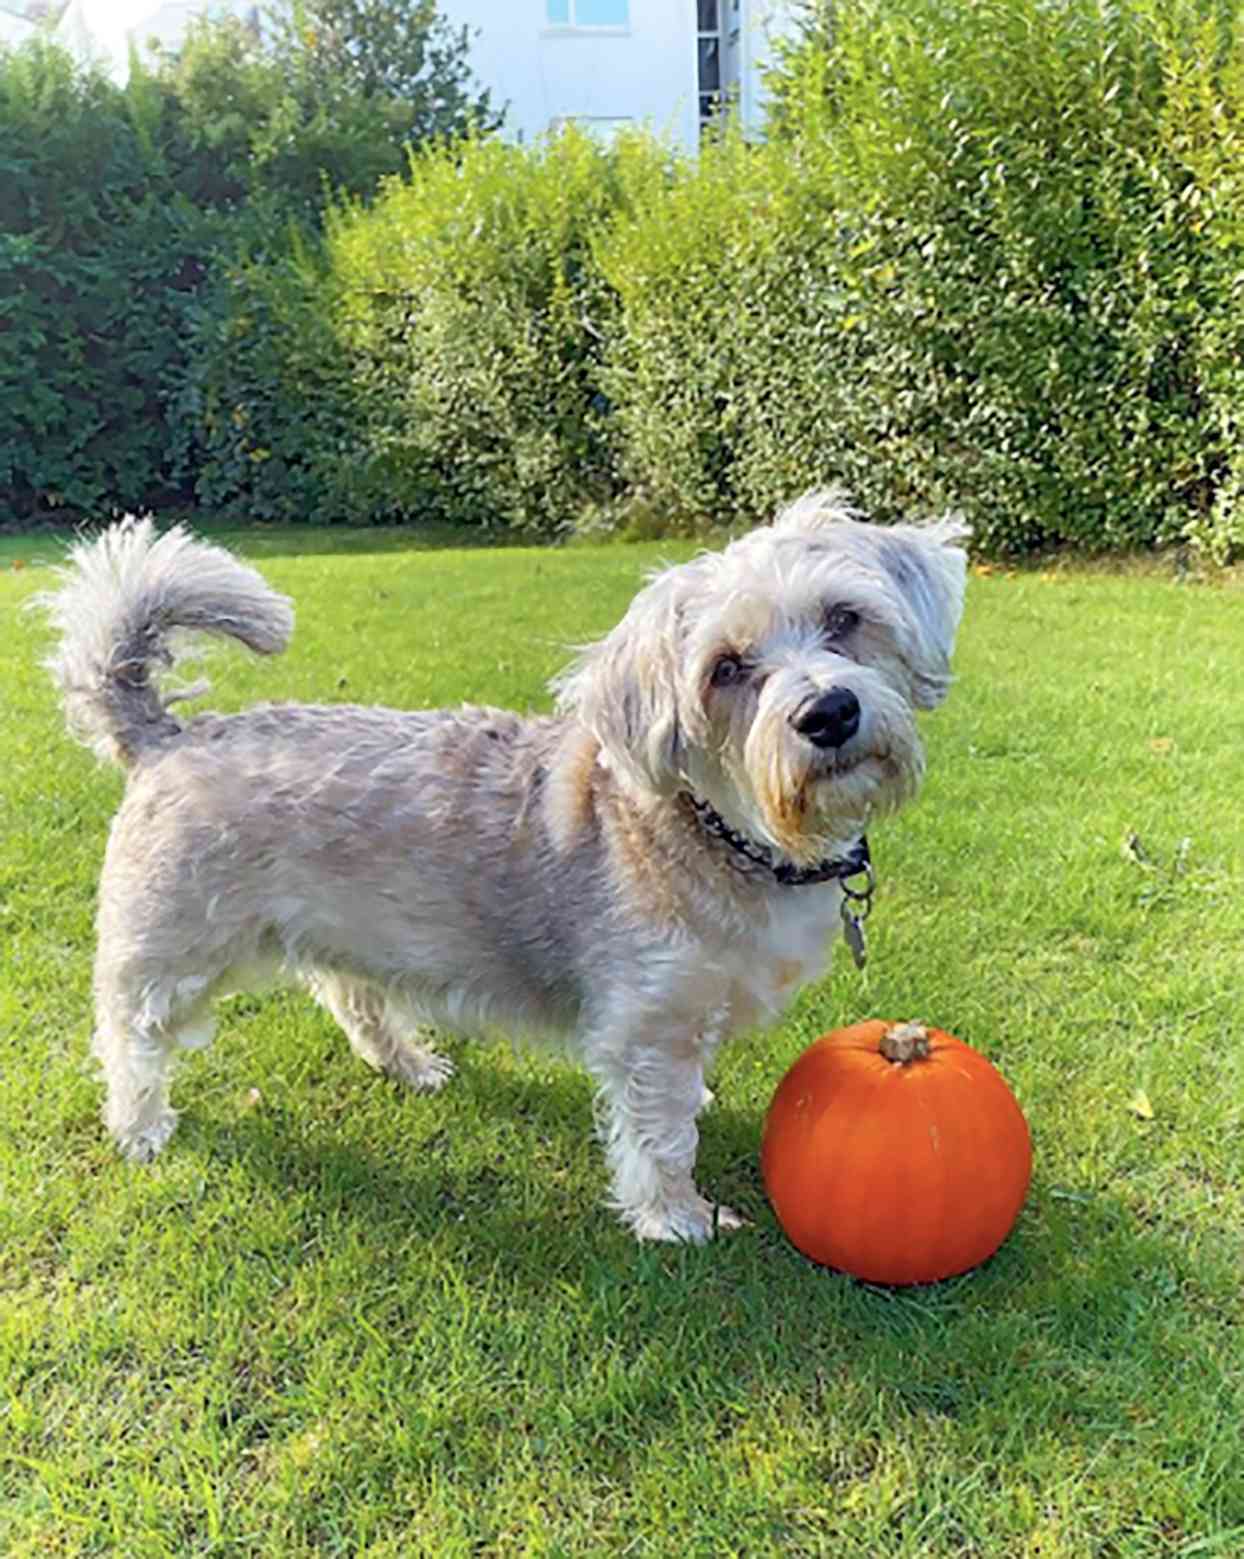 mauzer standing next to a pumpkin